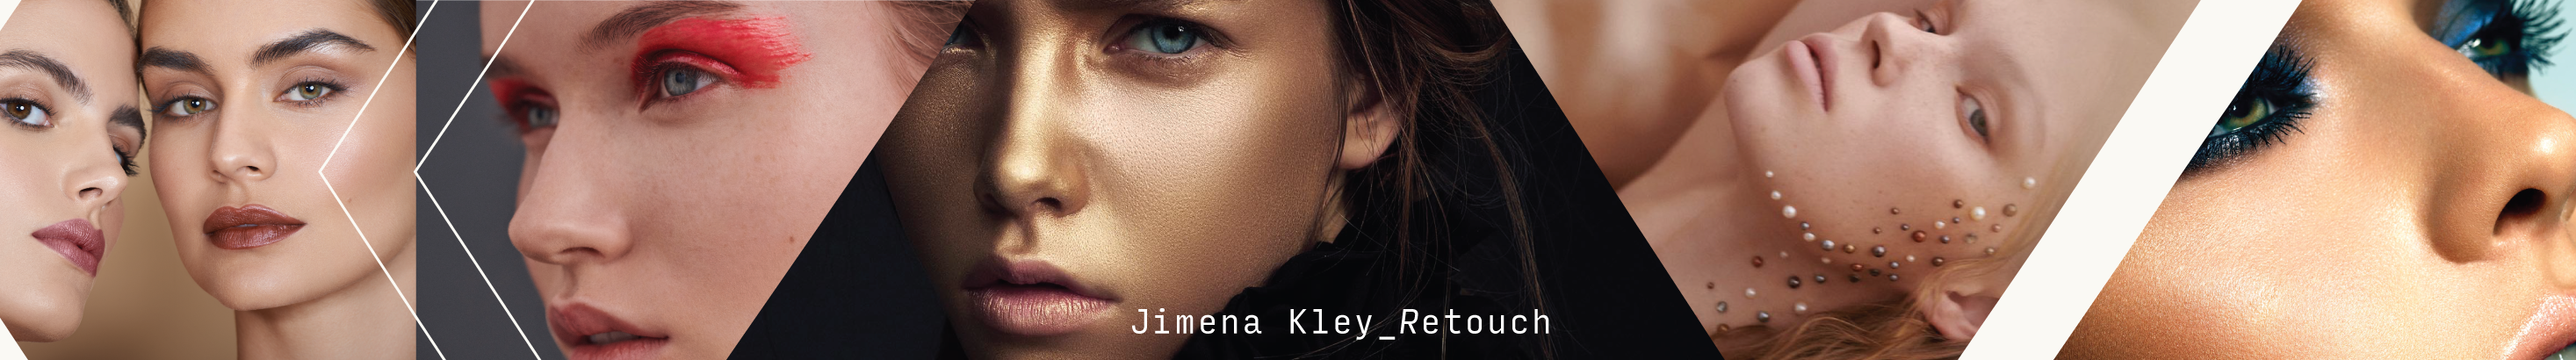 Banner de perfil de Jimena Kley